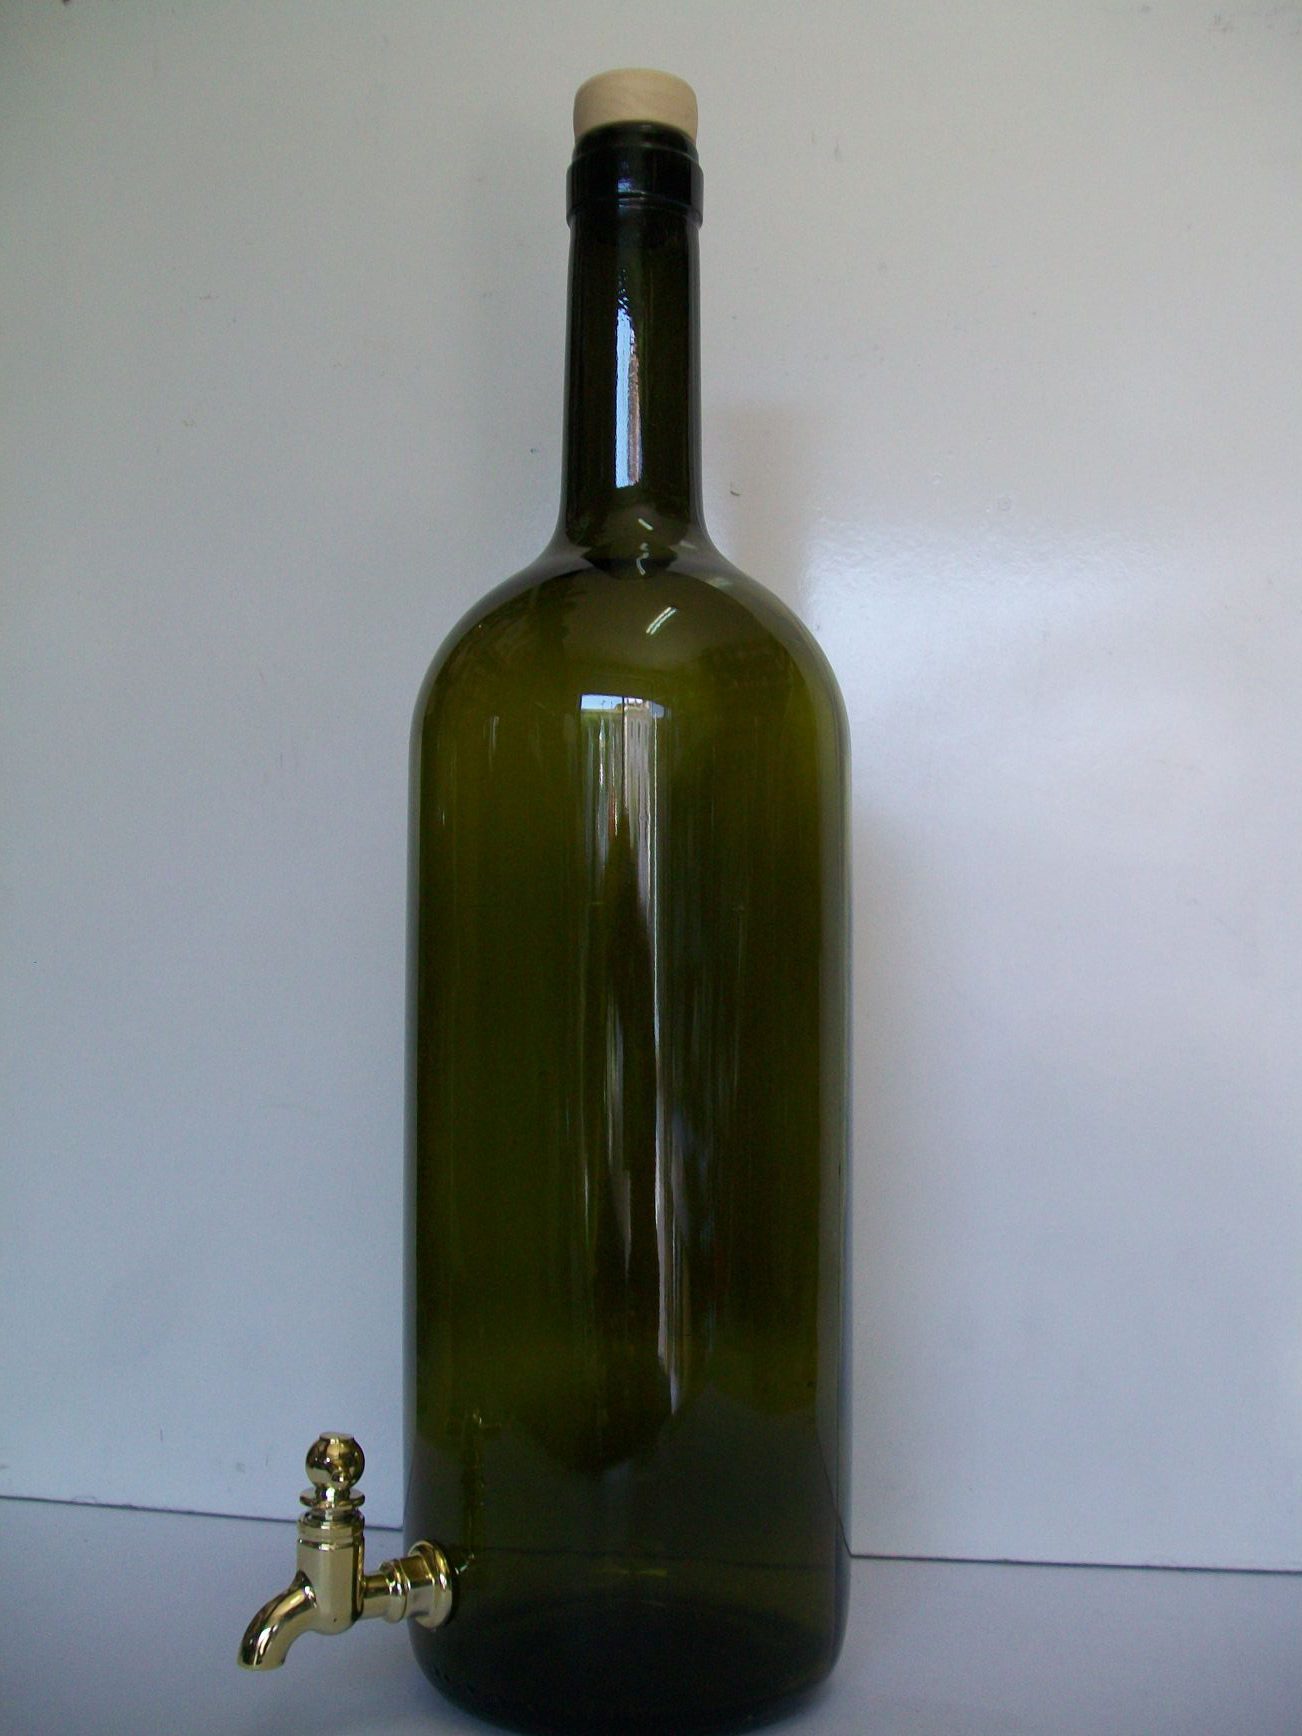 Bottiglia lt 1.5 rubinetto.